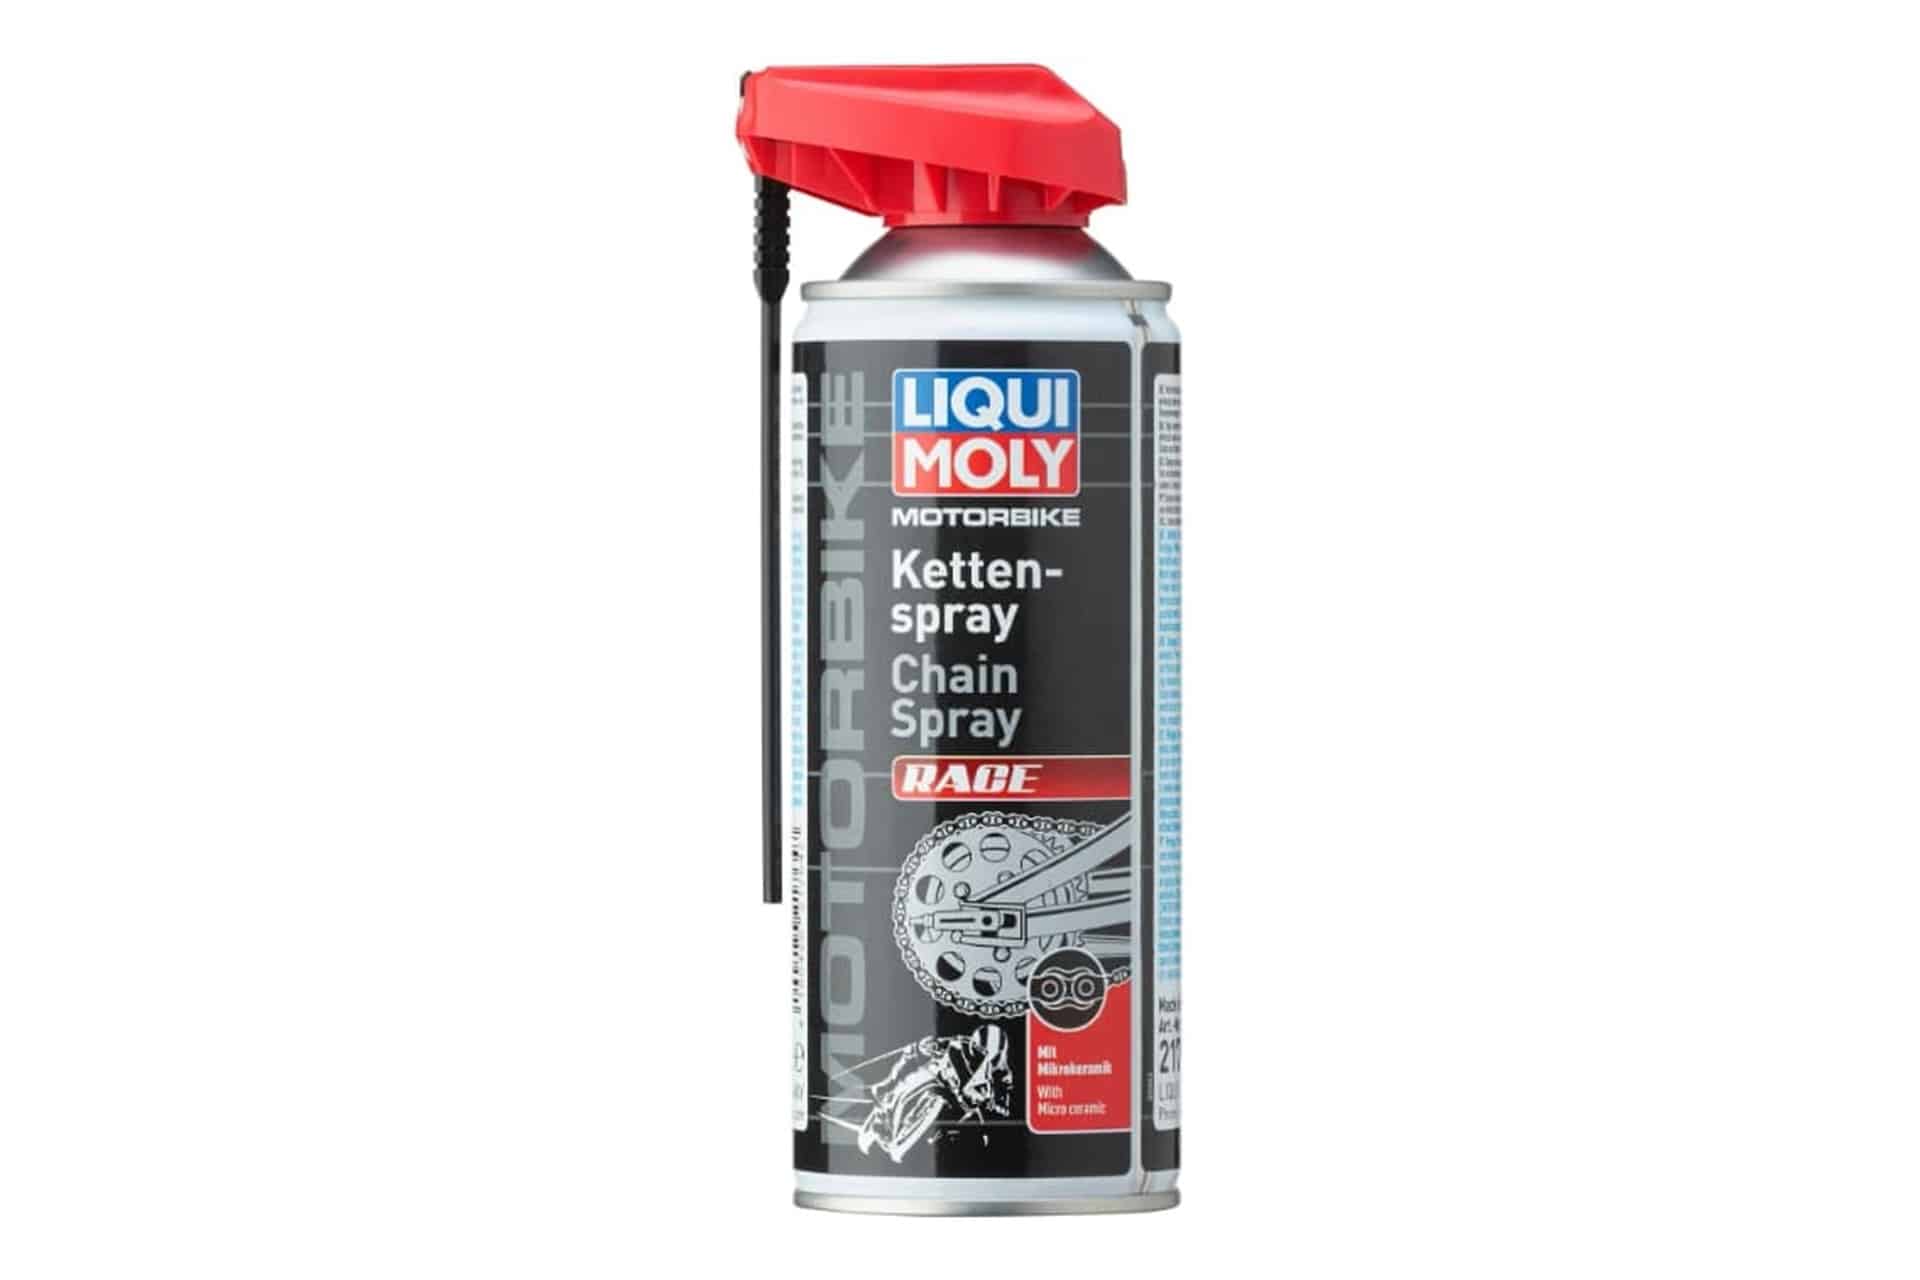 Liqui Moly presenta Race, su nuevo spray para cadenas